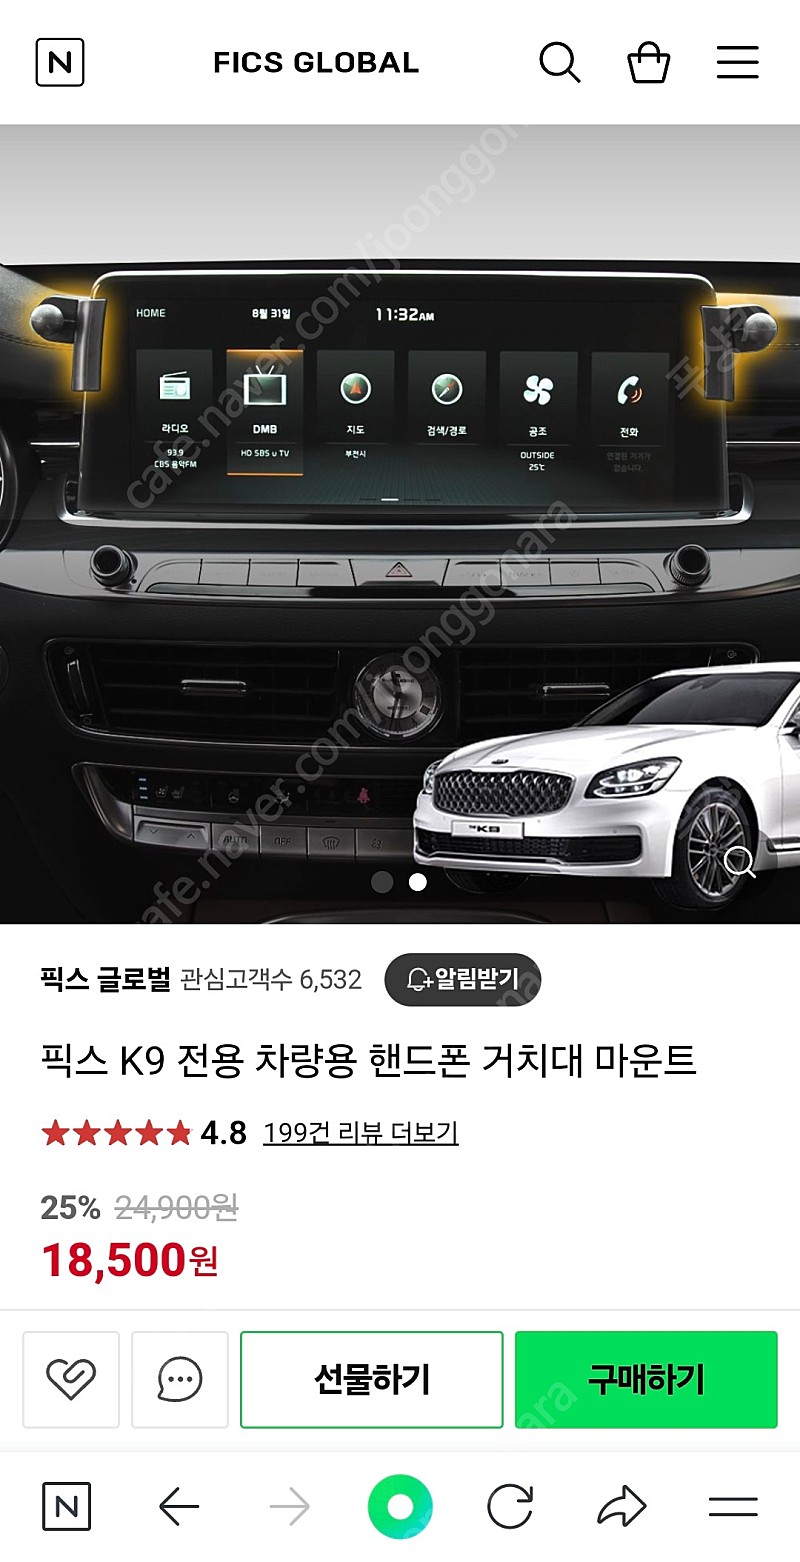 (새제품)픽스 K9 전용 차량용 핸드폰 거치대 마운트 팝니다. 번호판 포함